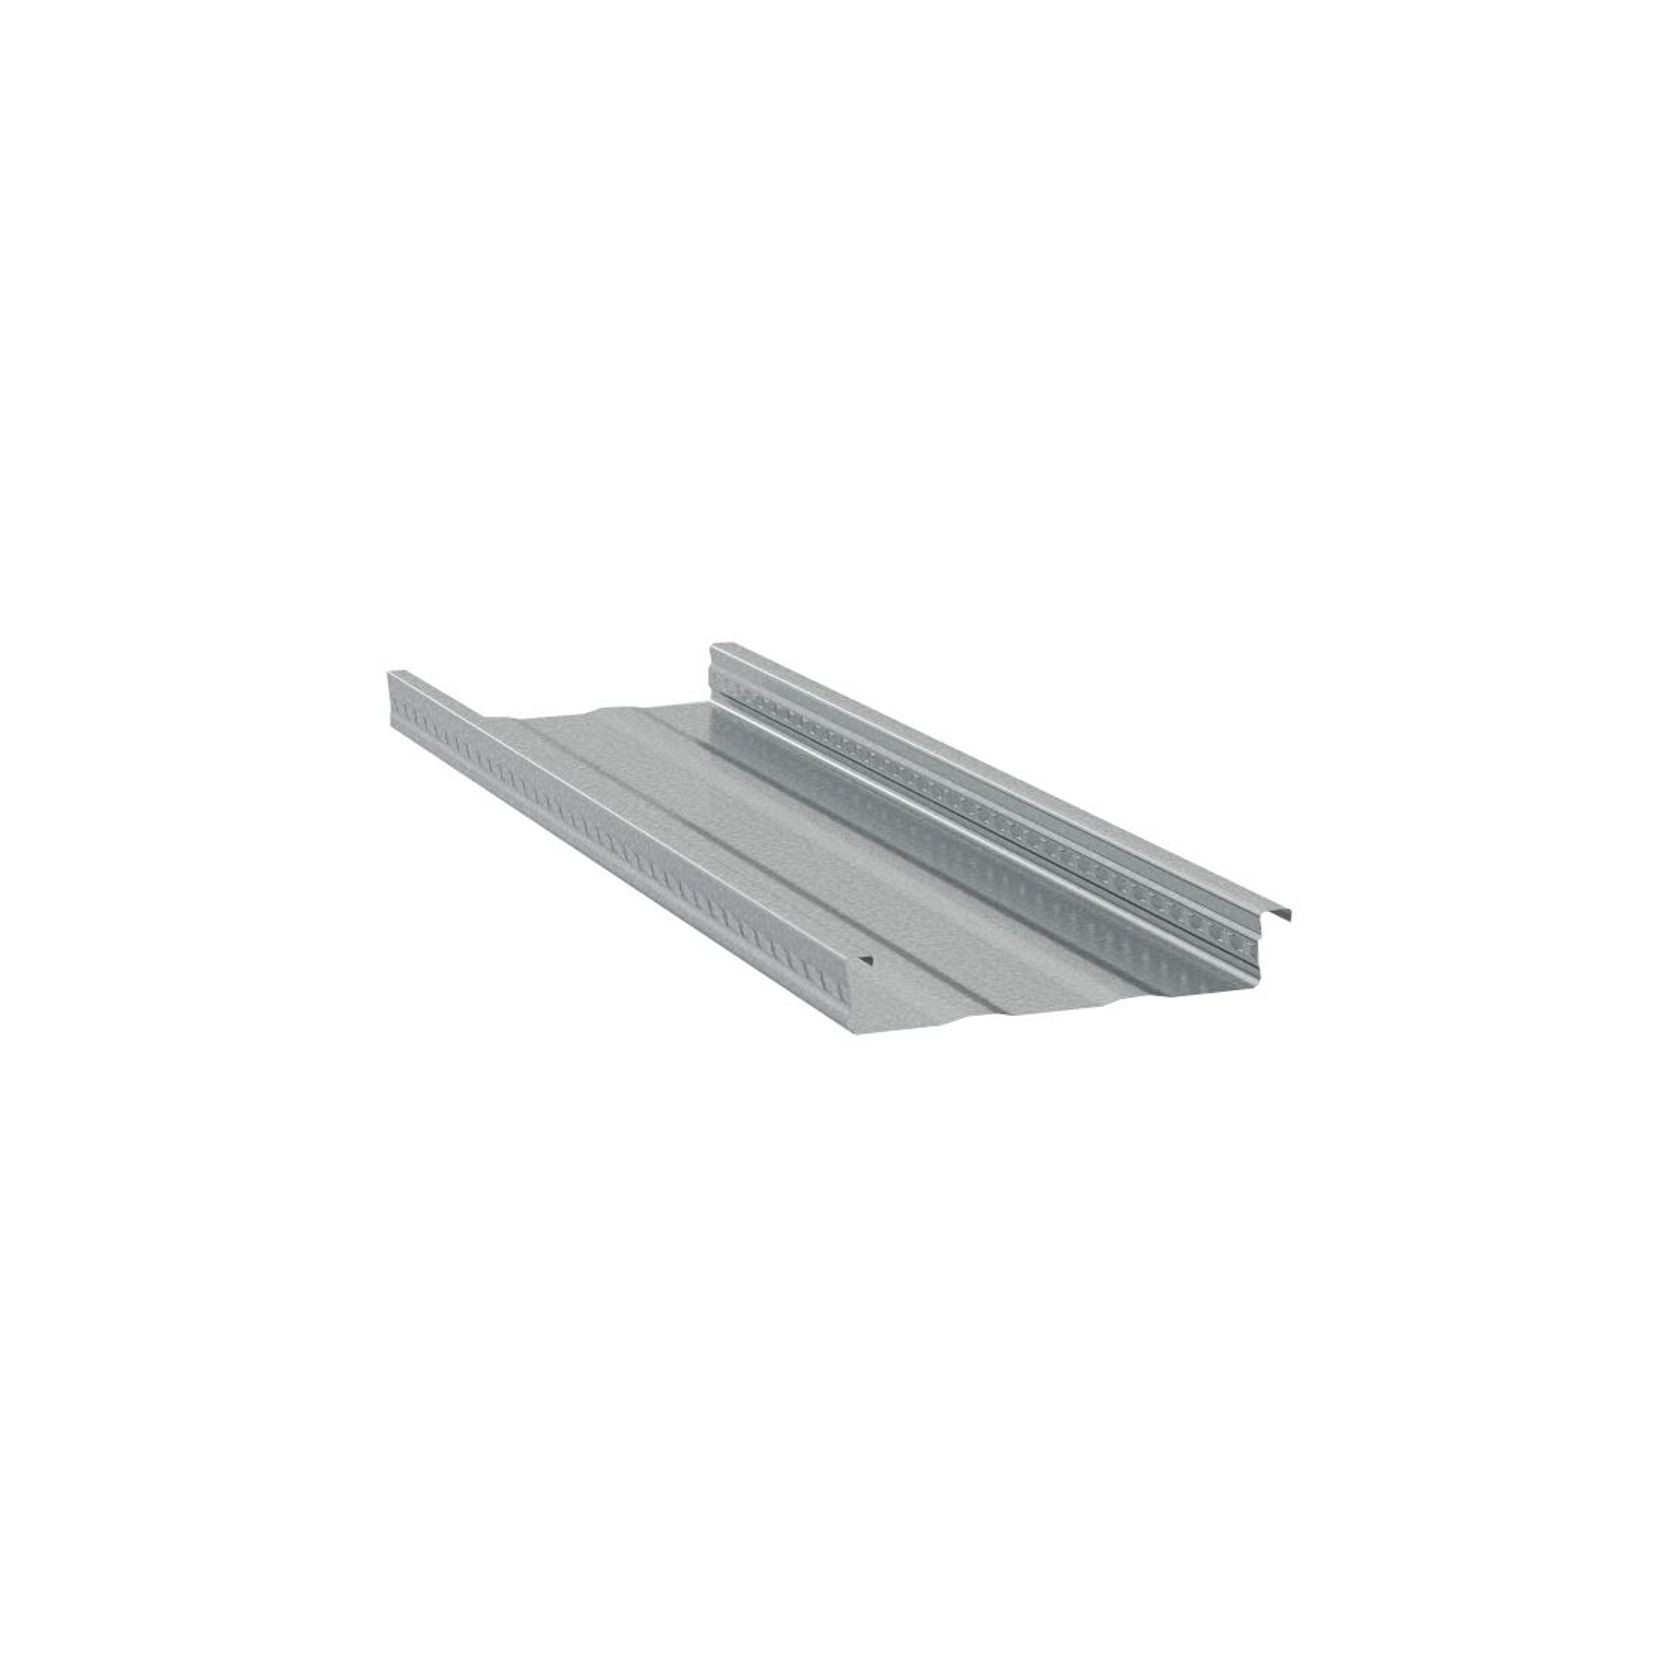 Unifloor | Composite Steel Flooring gallery detail image